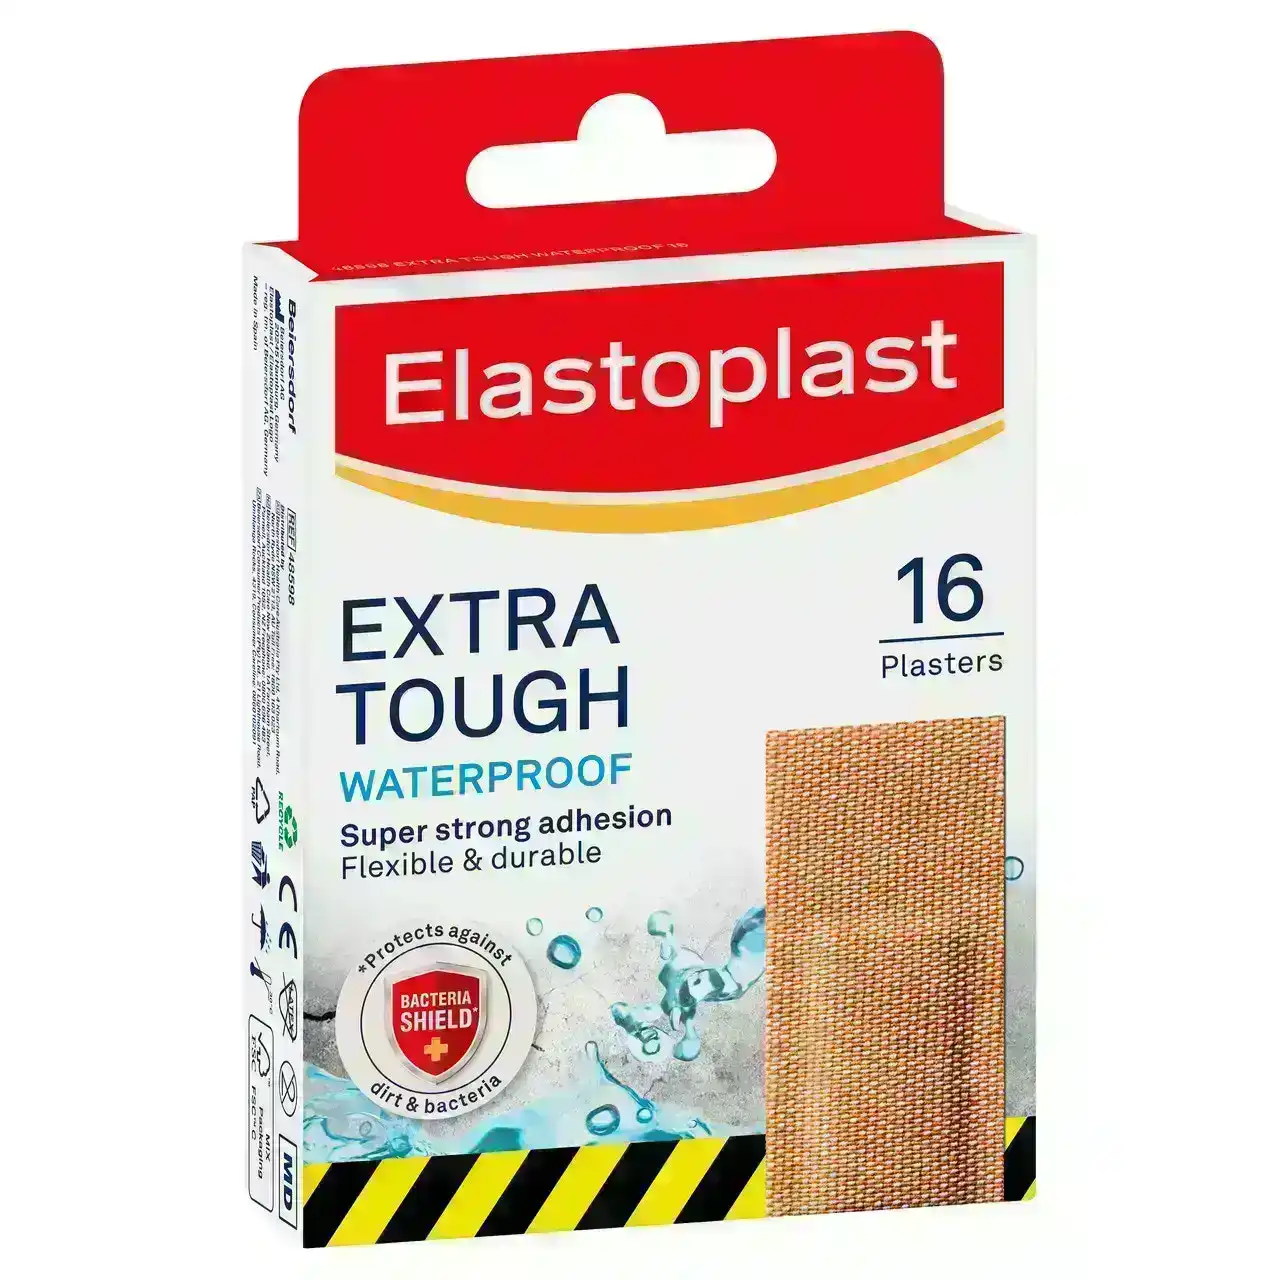 Elastoplast Extra Tough Waterproof 16 Pack